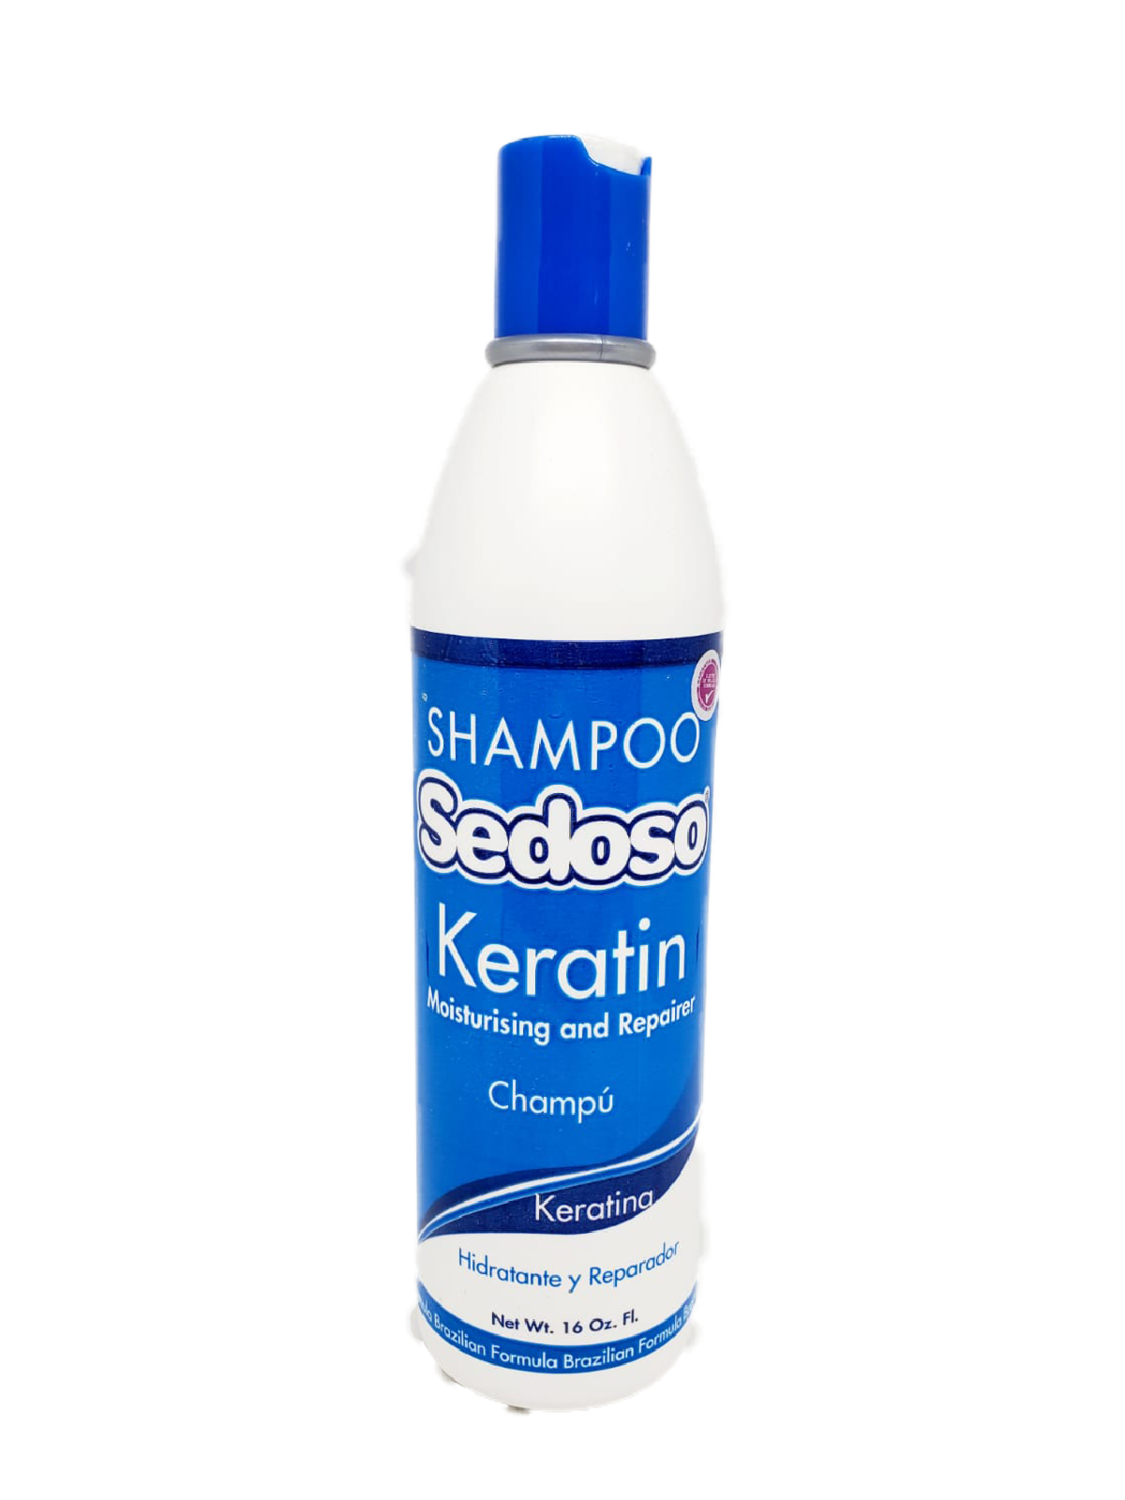 Shampoo con Keratina - Sedoso